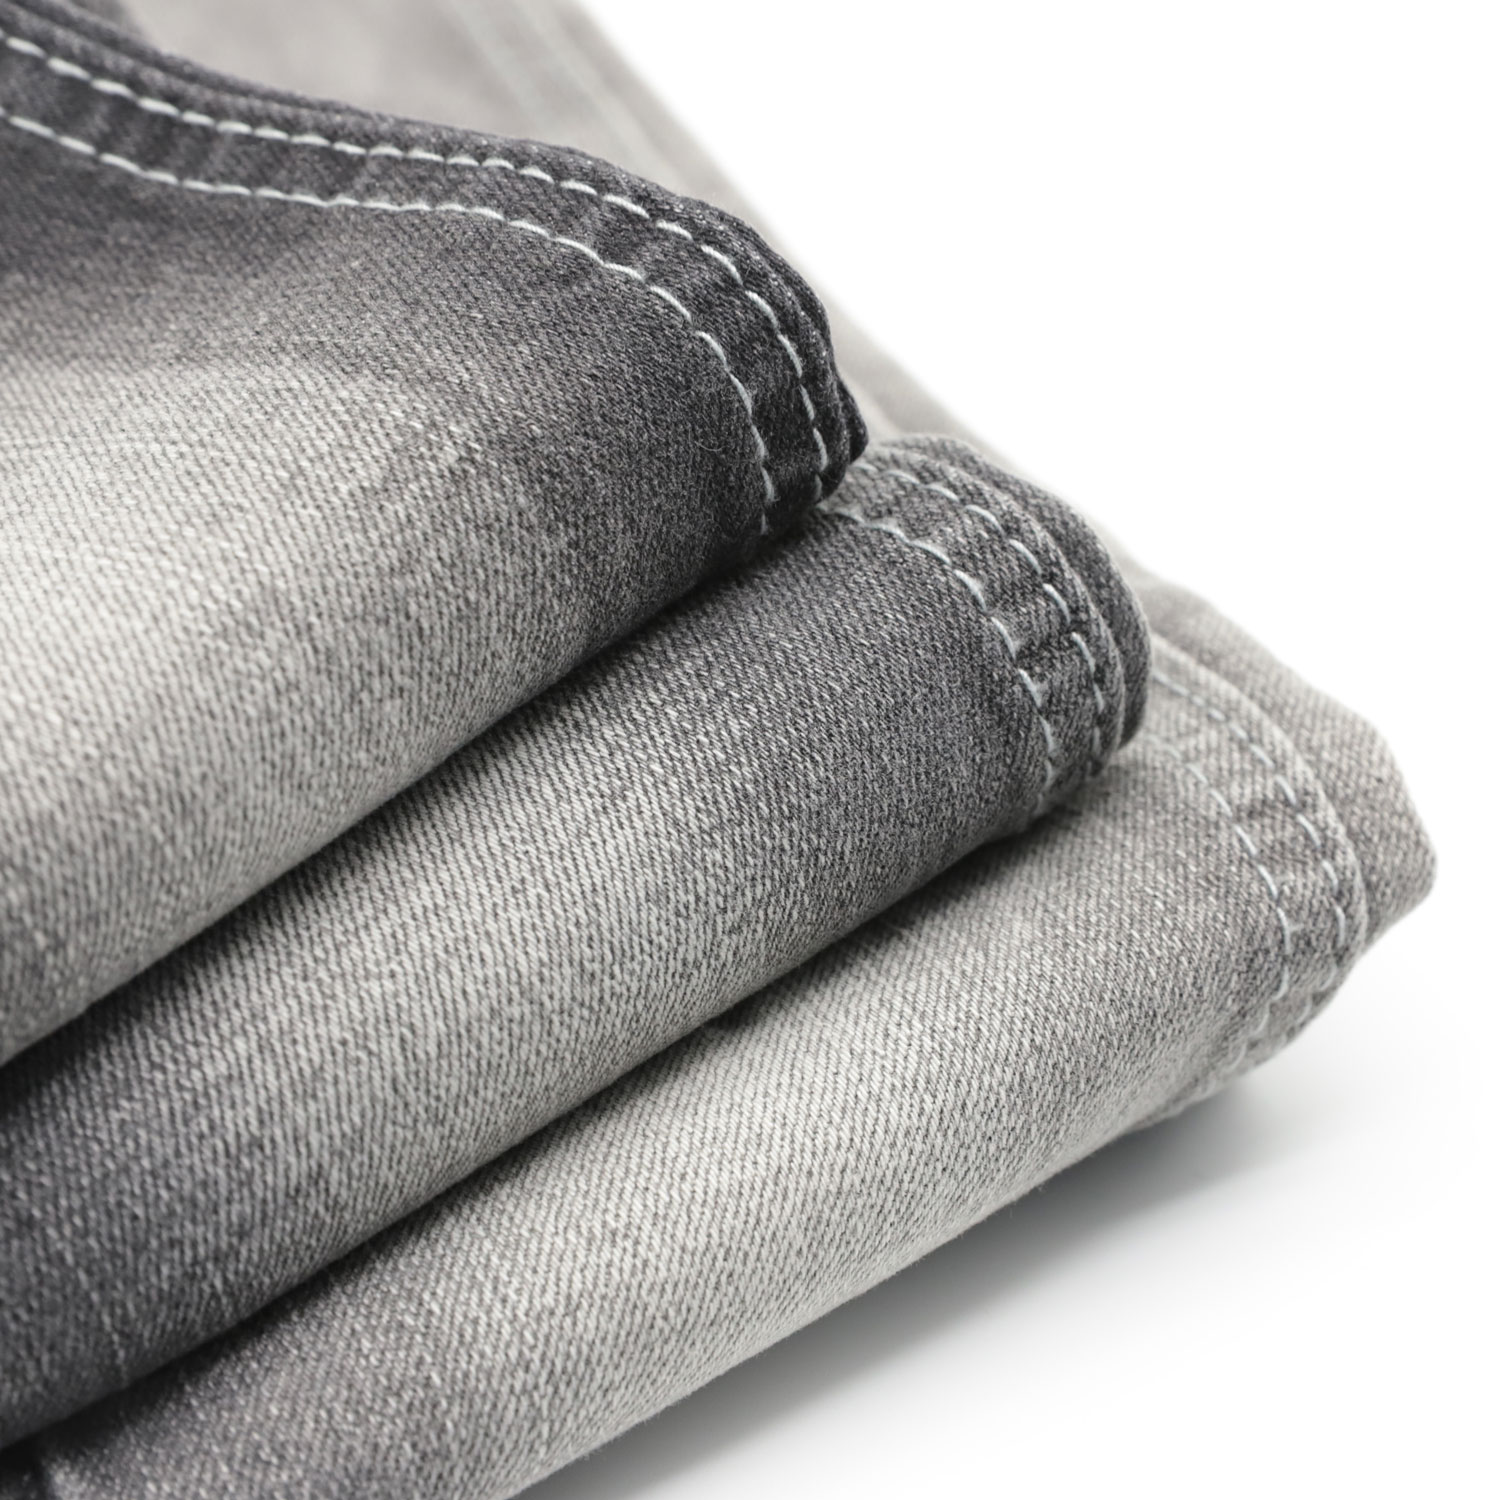 Denim Fabric Manufacturers  Buy the Best Denim Fabric Manufacturers Now 1